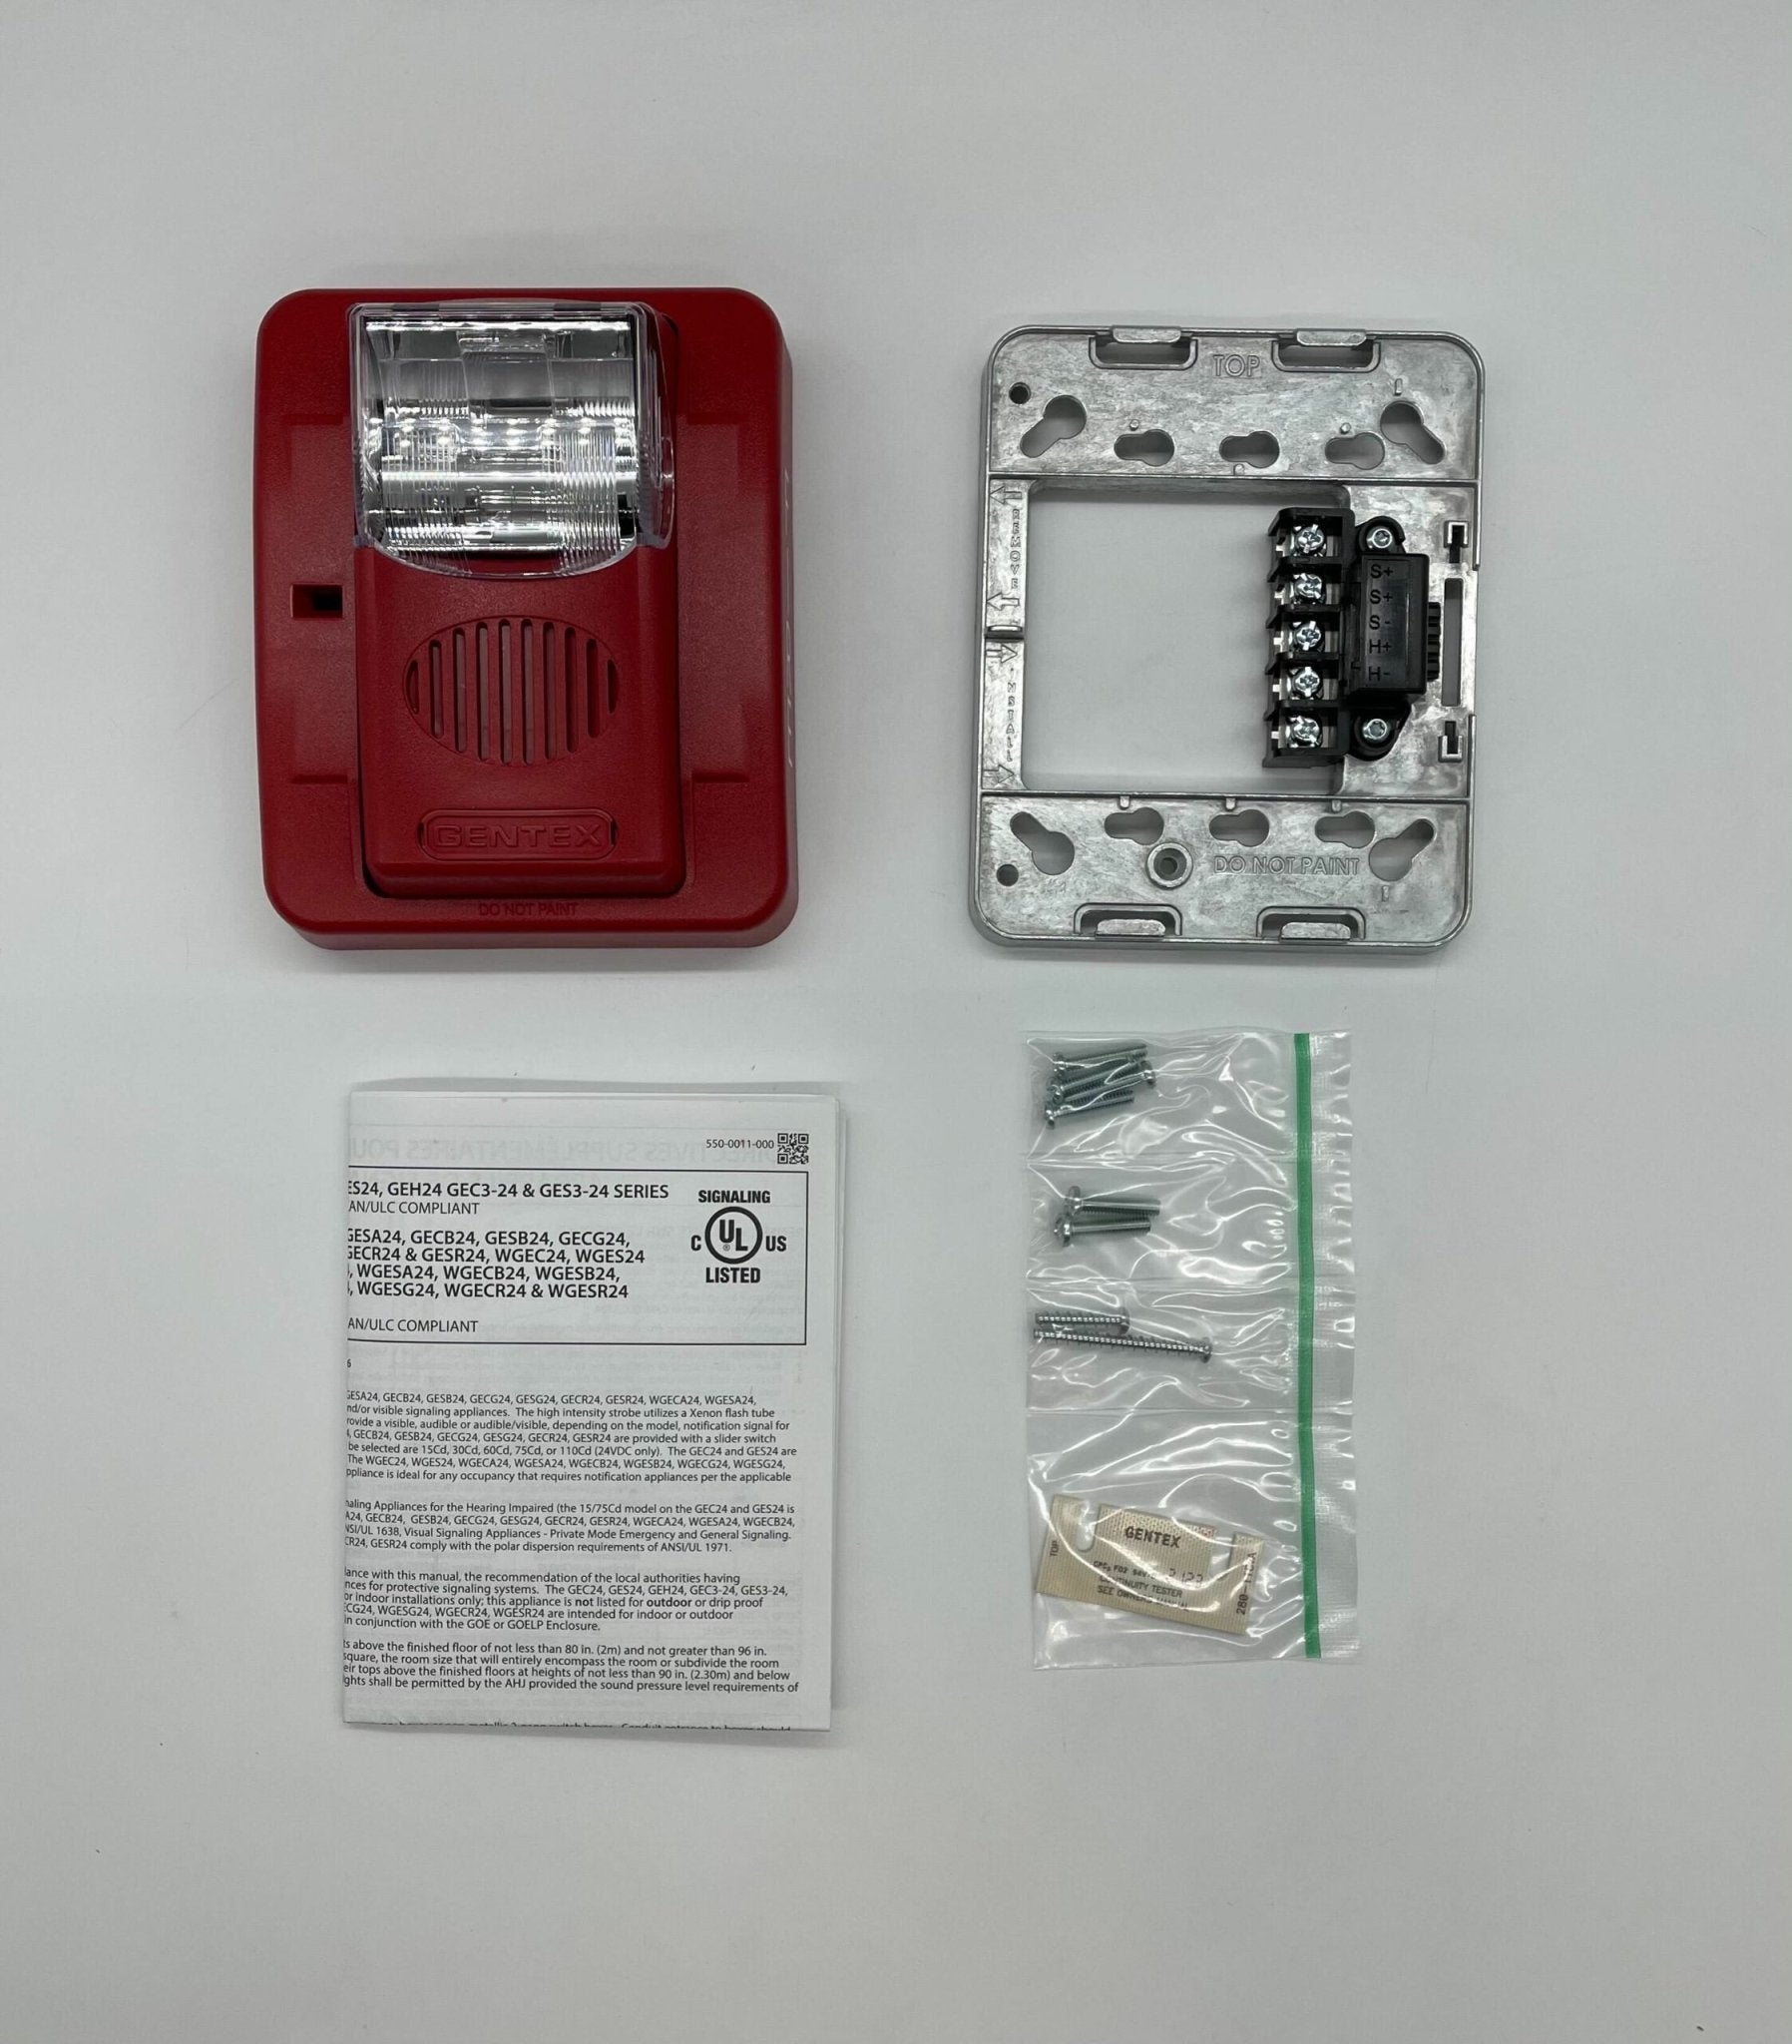 Gentex GEC3-24WR - The Fire Alarm Supplier